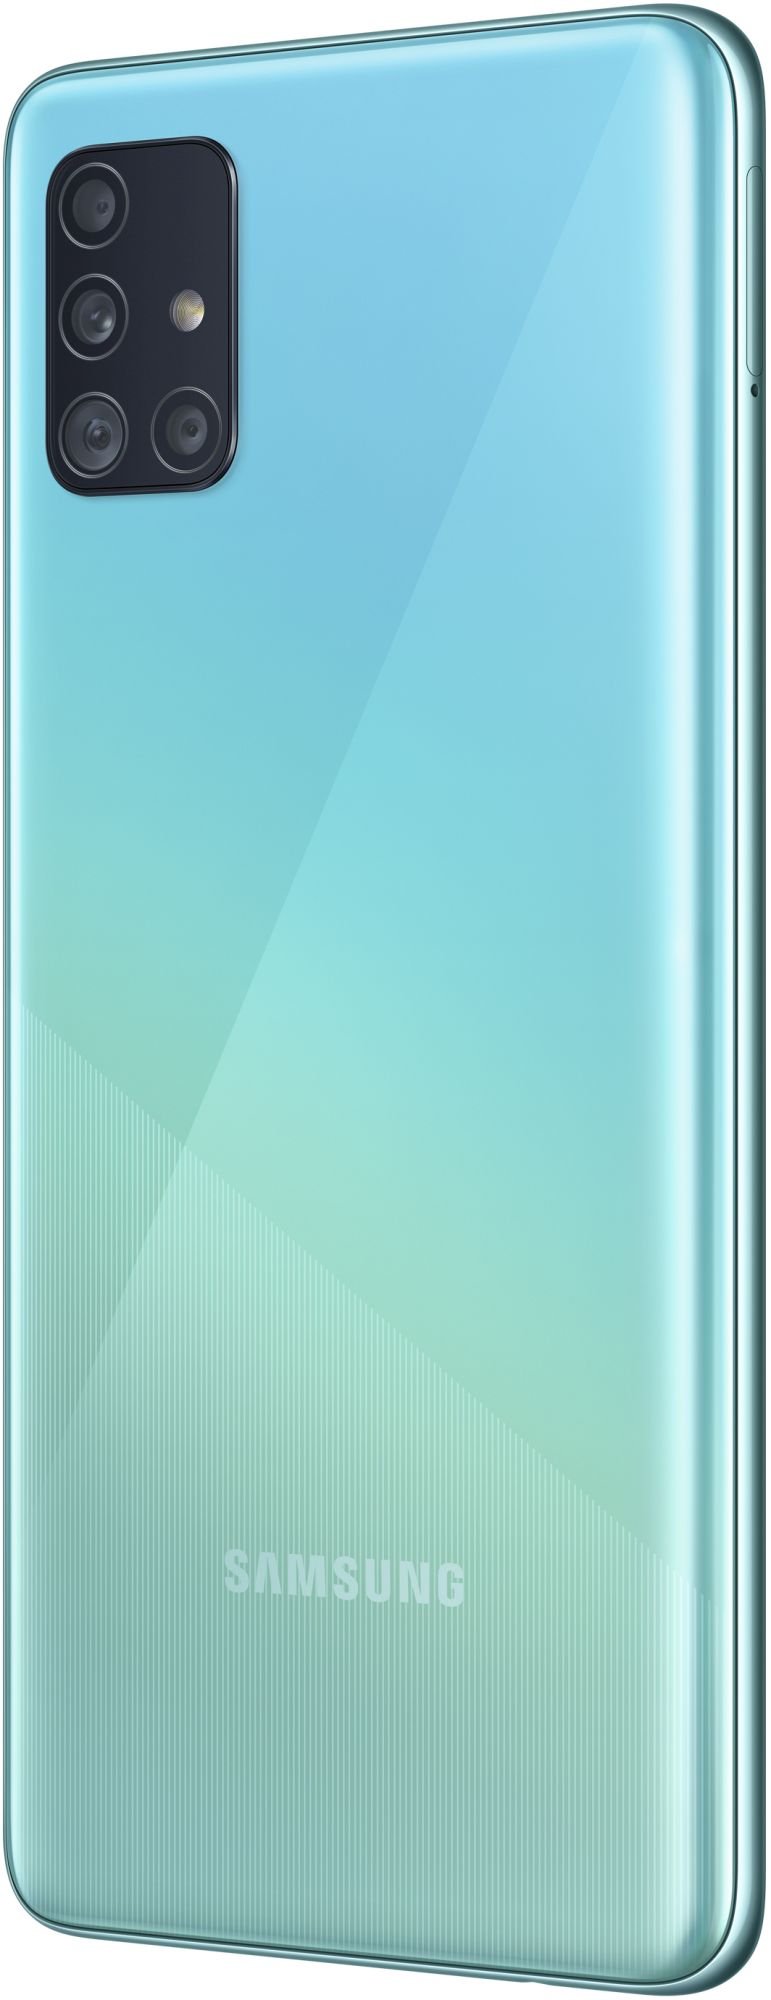 Samsung Galaxy A51 64GB_hor Blue